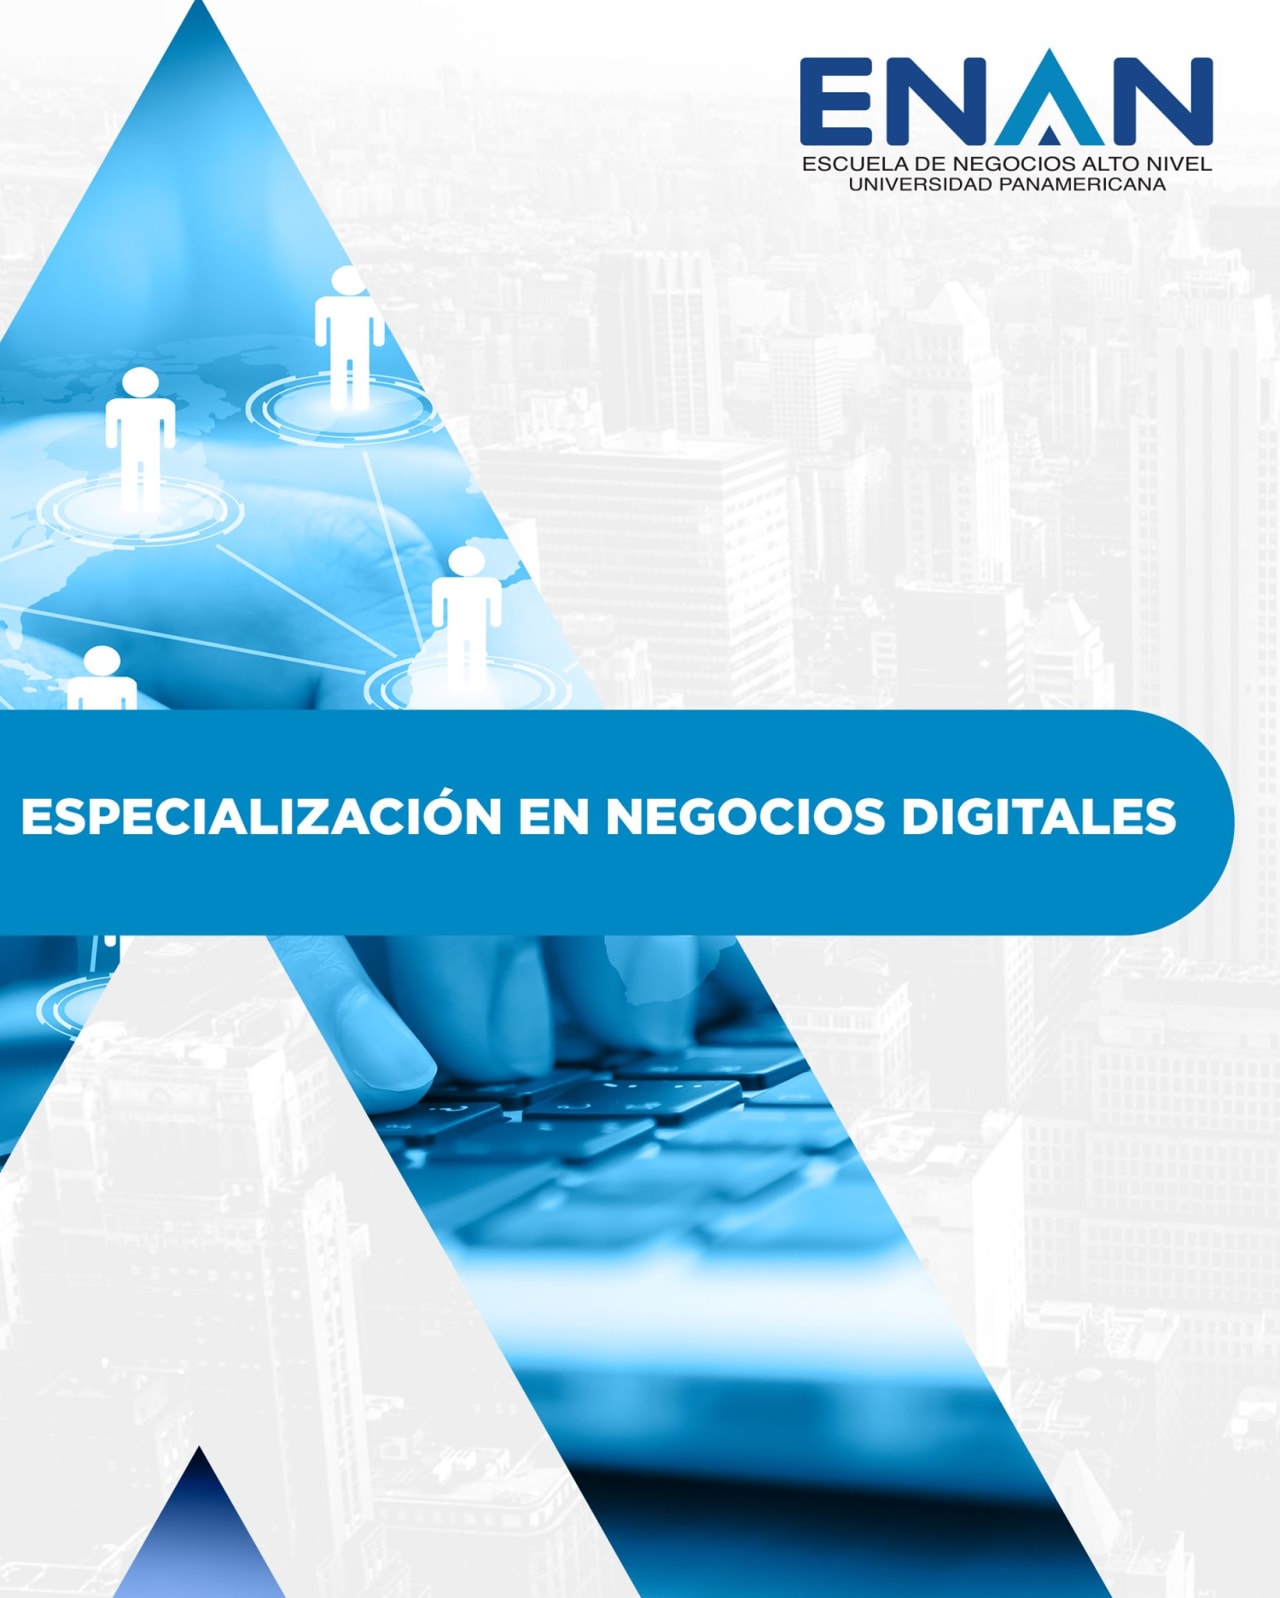 Escuela de Negocios Alto Nivel - Universidad Panamericana de Guatemala Especialización en Negocios Digitales